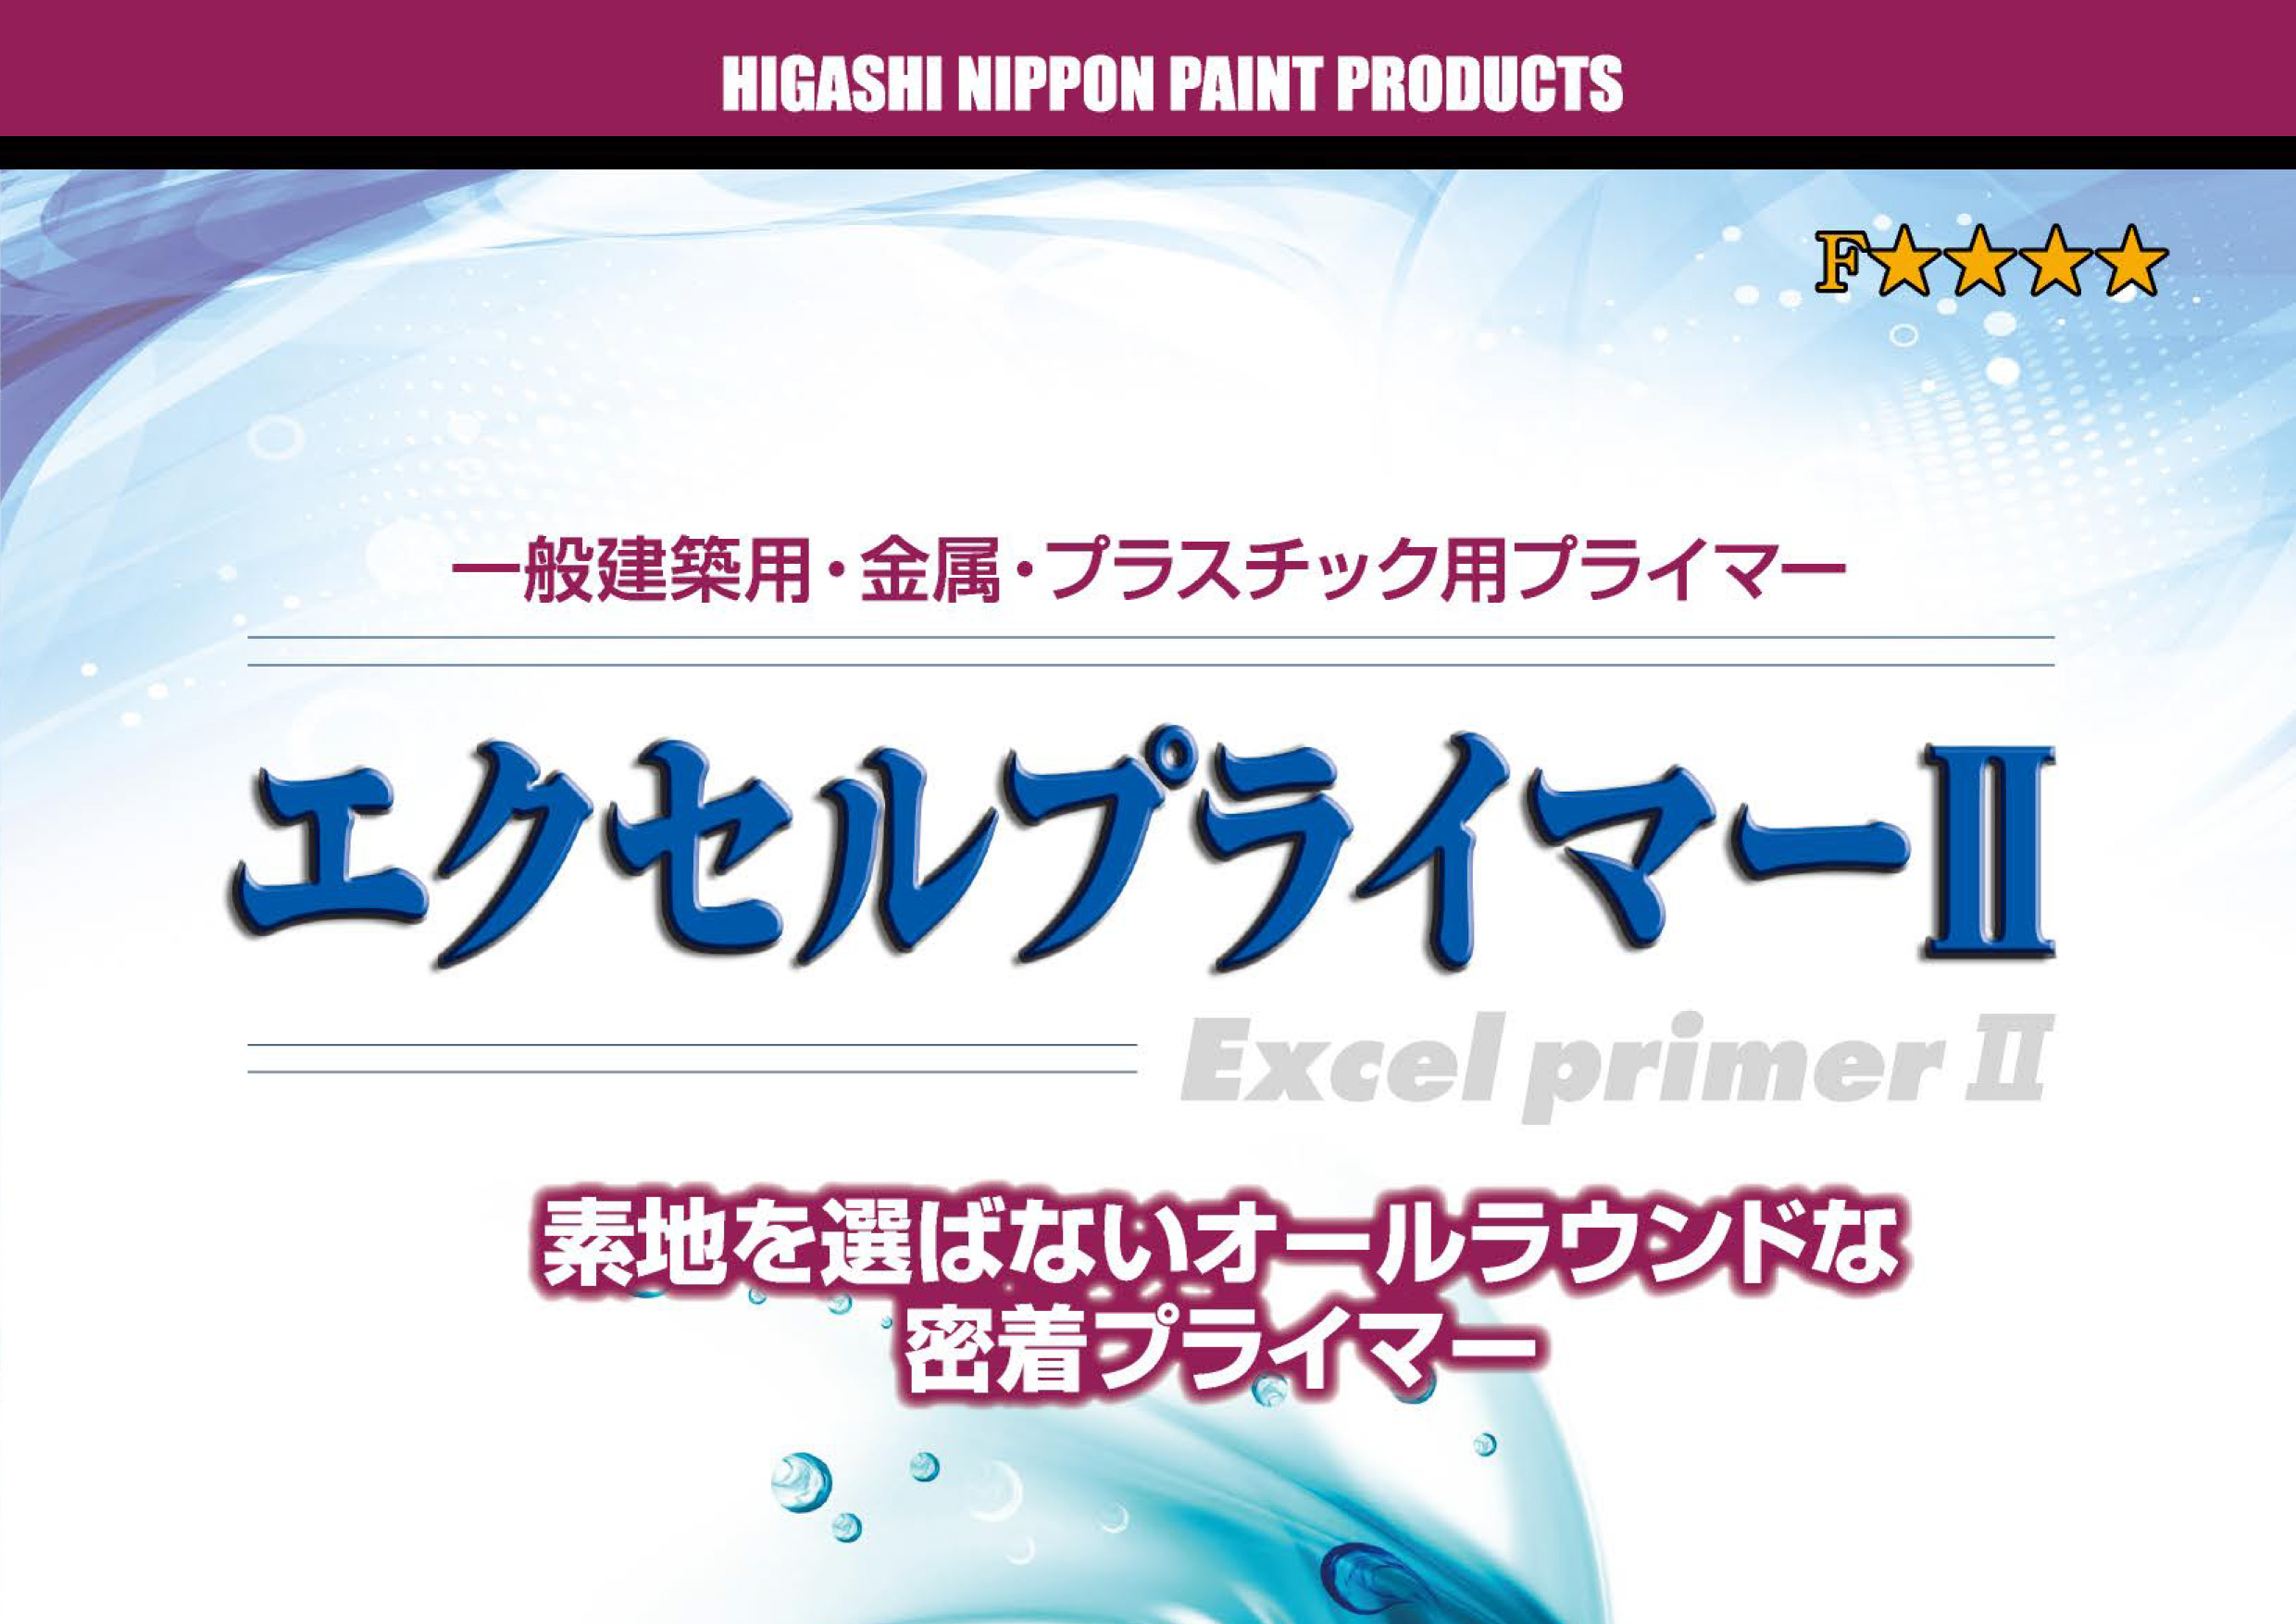 素地を選ばないオールラウンダーな密着プライマーと言えば？東日本塗料にもある！「エクセルプライマーⅡ」！！